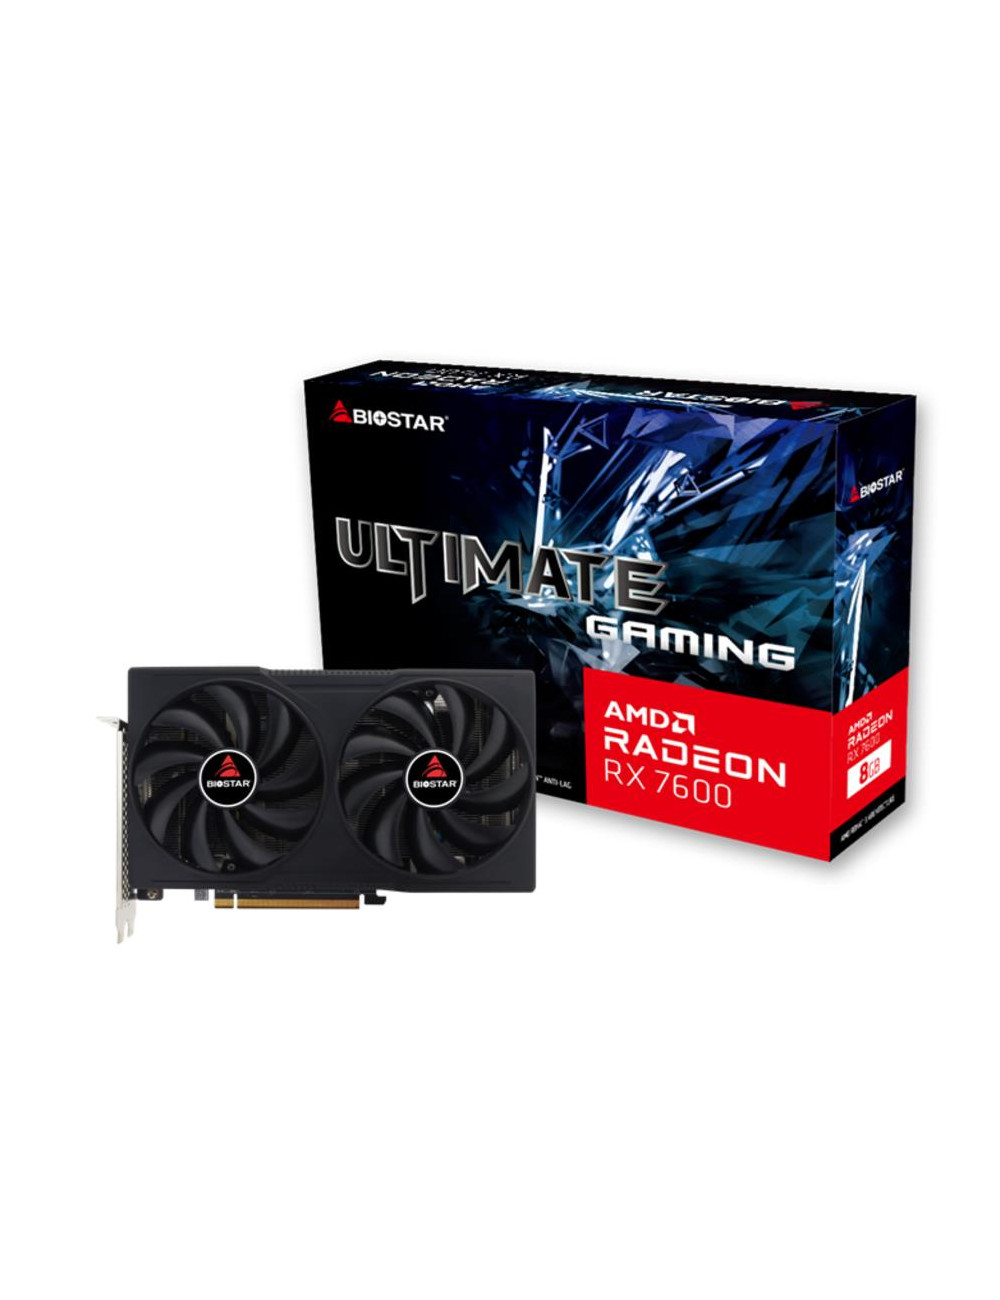 Graphics Card|BIOSTAR|AMD Radeon RX 7600|8 GB|GDDR6|128 bit|PCIE 4.0 16x|GPU 2250 MHz|Dual Slot Fansink|1xHDMI|3xDisplayPort|VA7